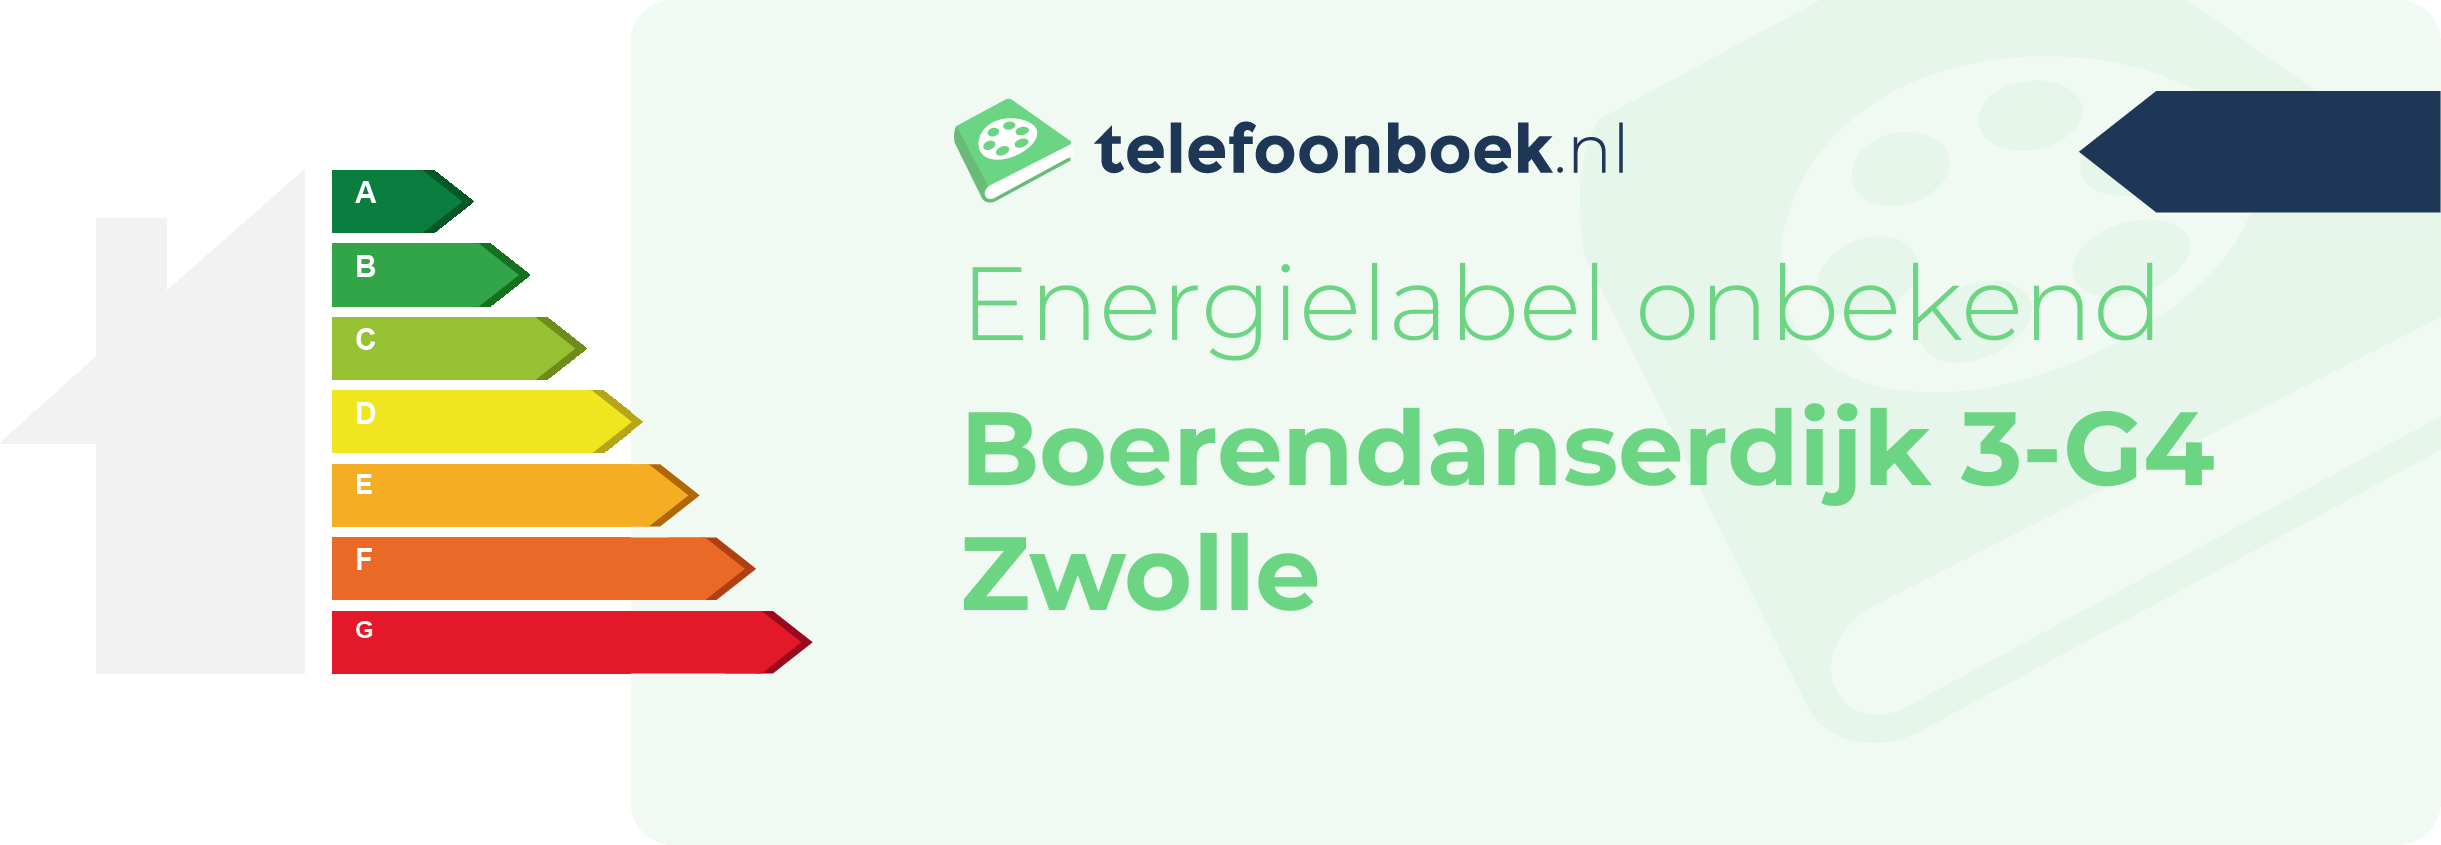 Energielabel Boerendanserdijk 3-G4 Zwolle